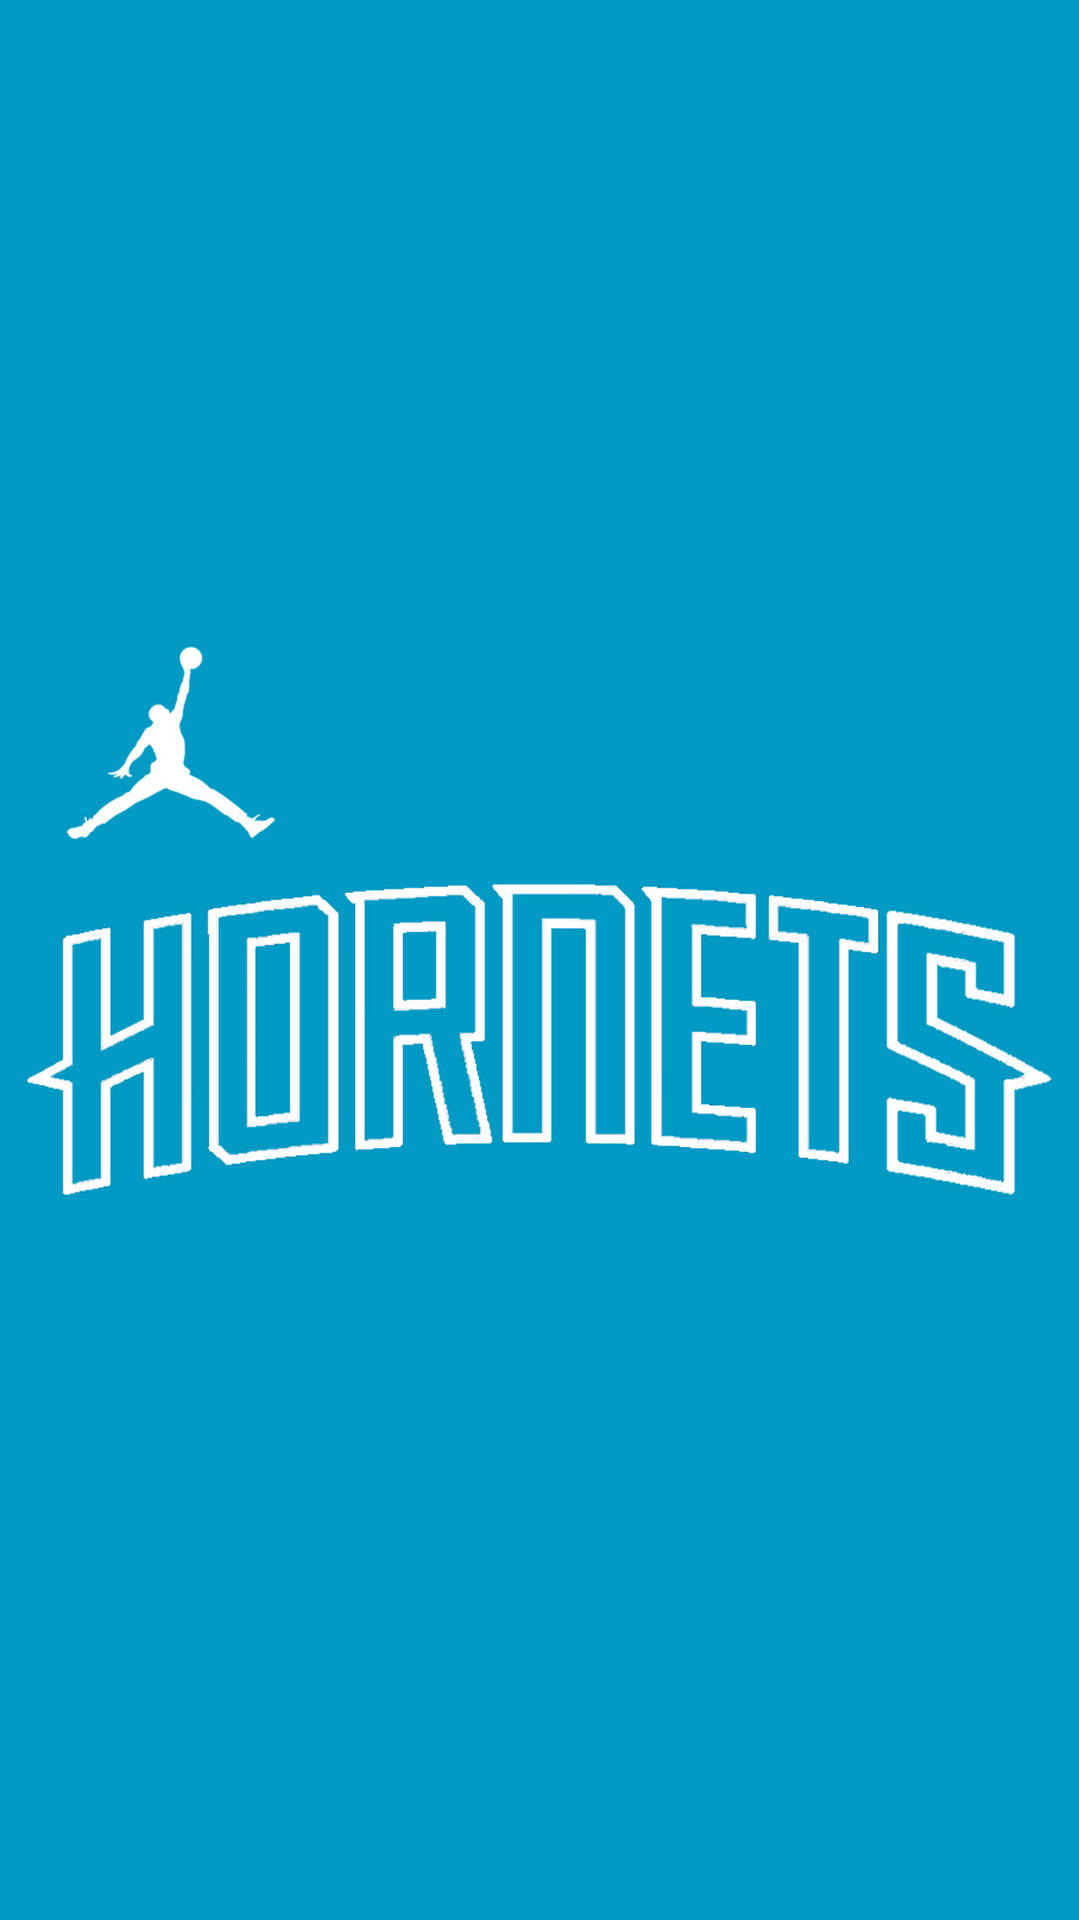 Charlotte Hornets Wallpaper